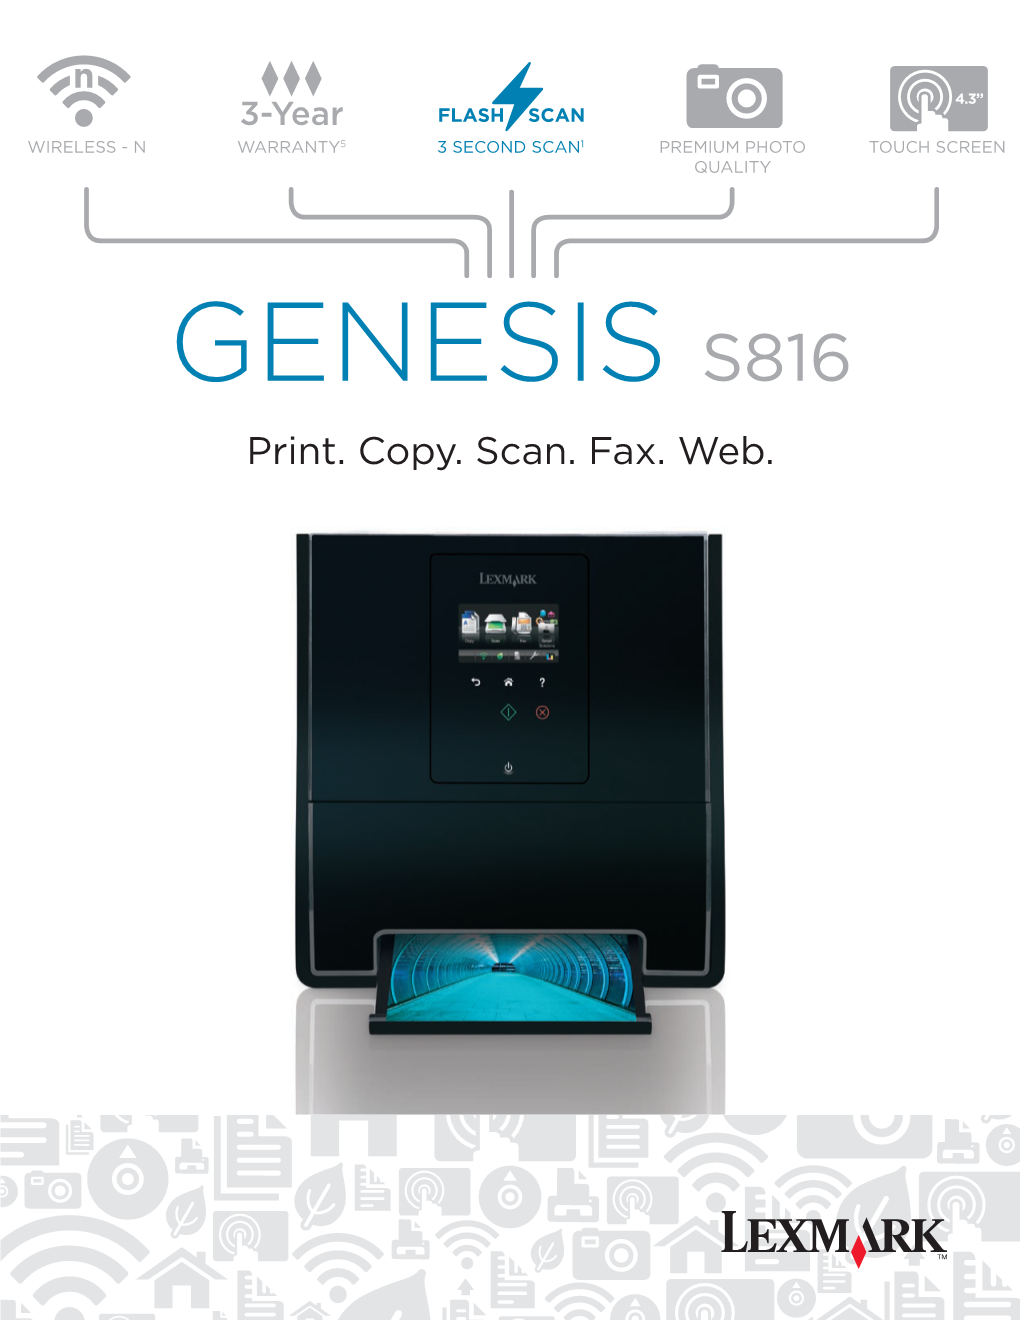 GENESIS S816 Print